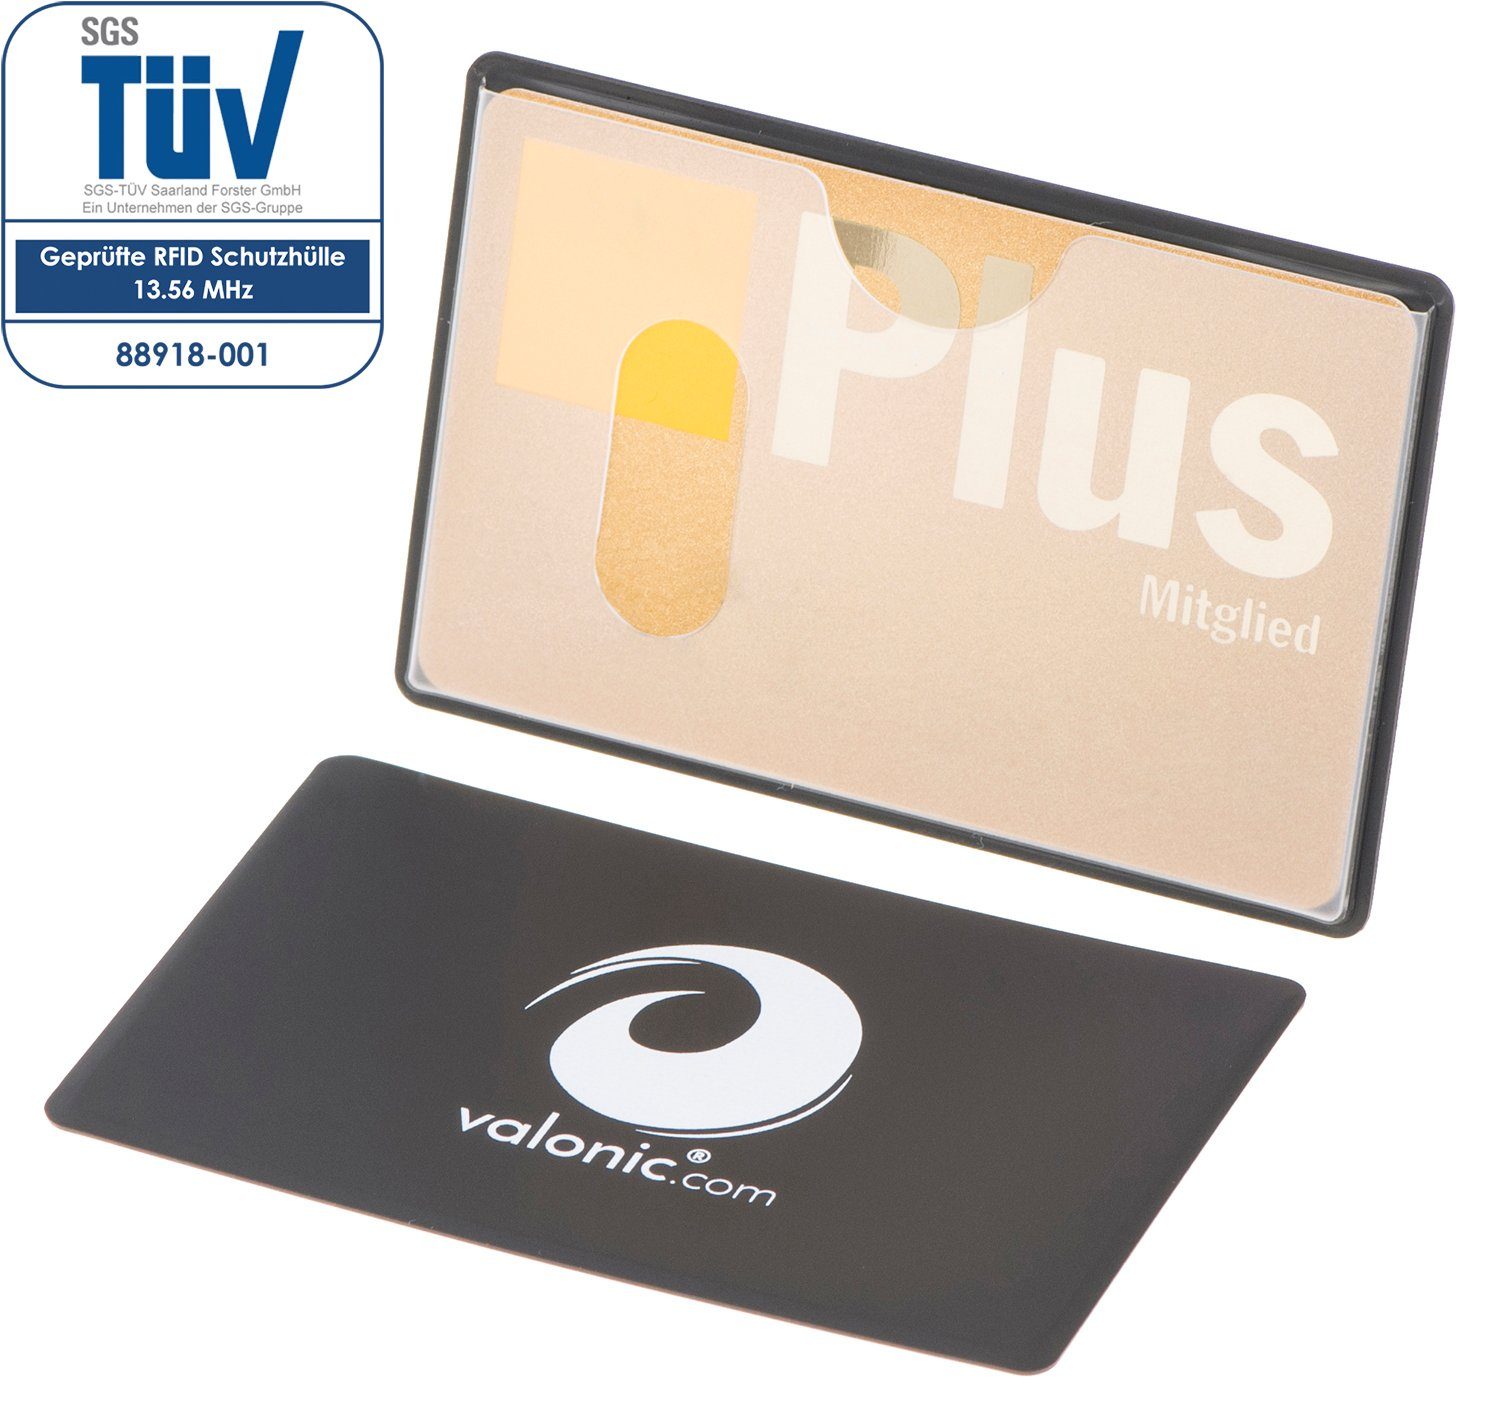 valonic Etui valonic - Kreditkartenhüllen RFID oben Einschub NFZ Schutz, mm, 91 59 Stück transparent, RFID-Block Scheckkarte x 6 Kreditkarte, abgeschirmt